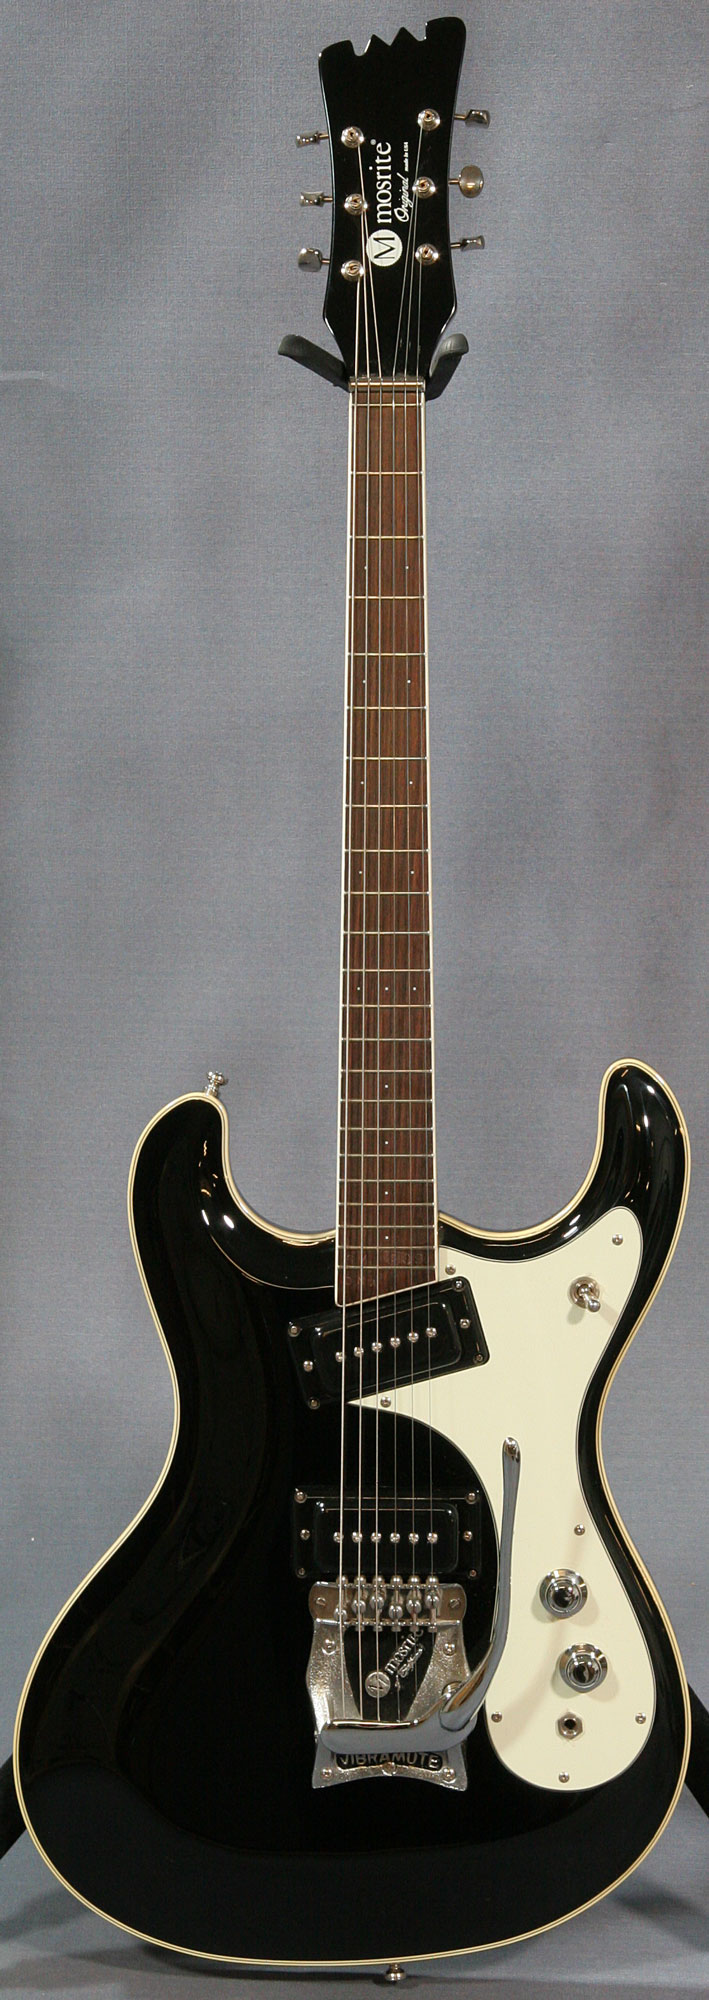 mosrite guitar serial numbers